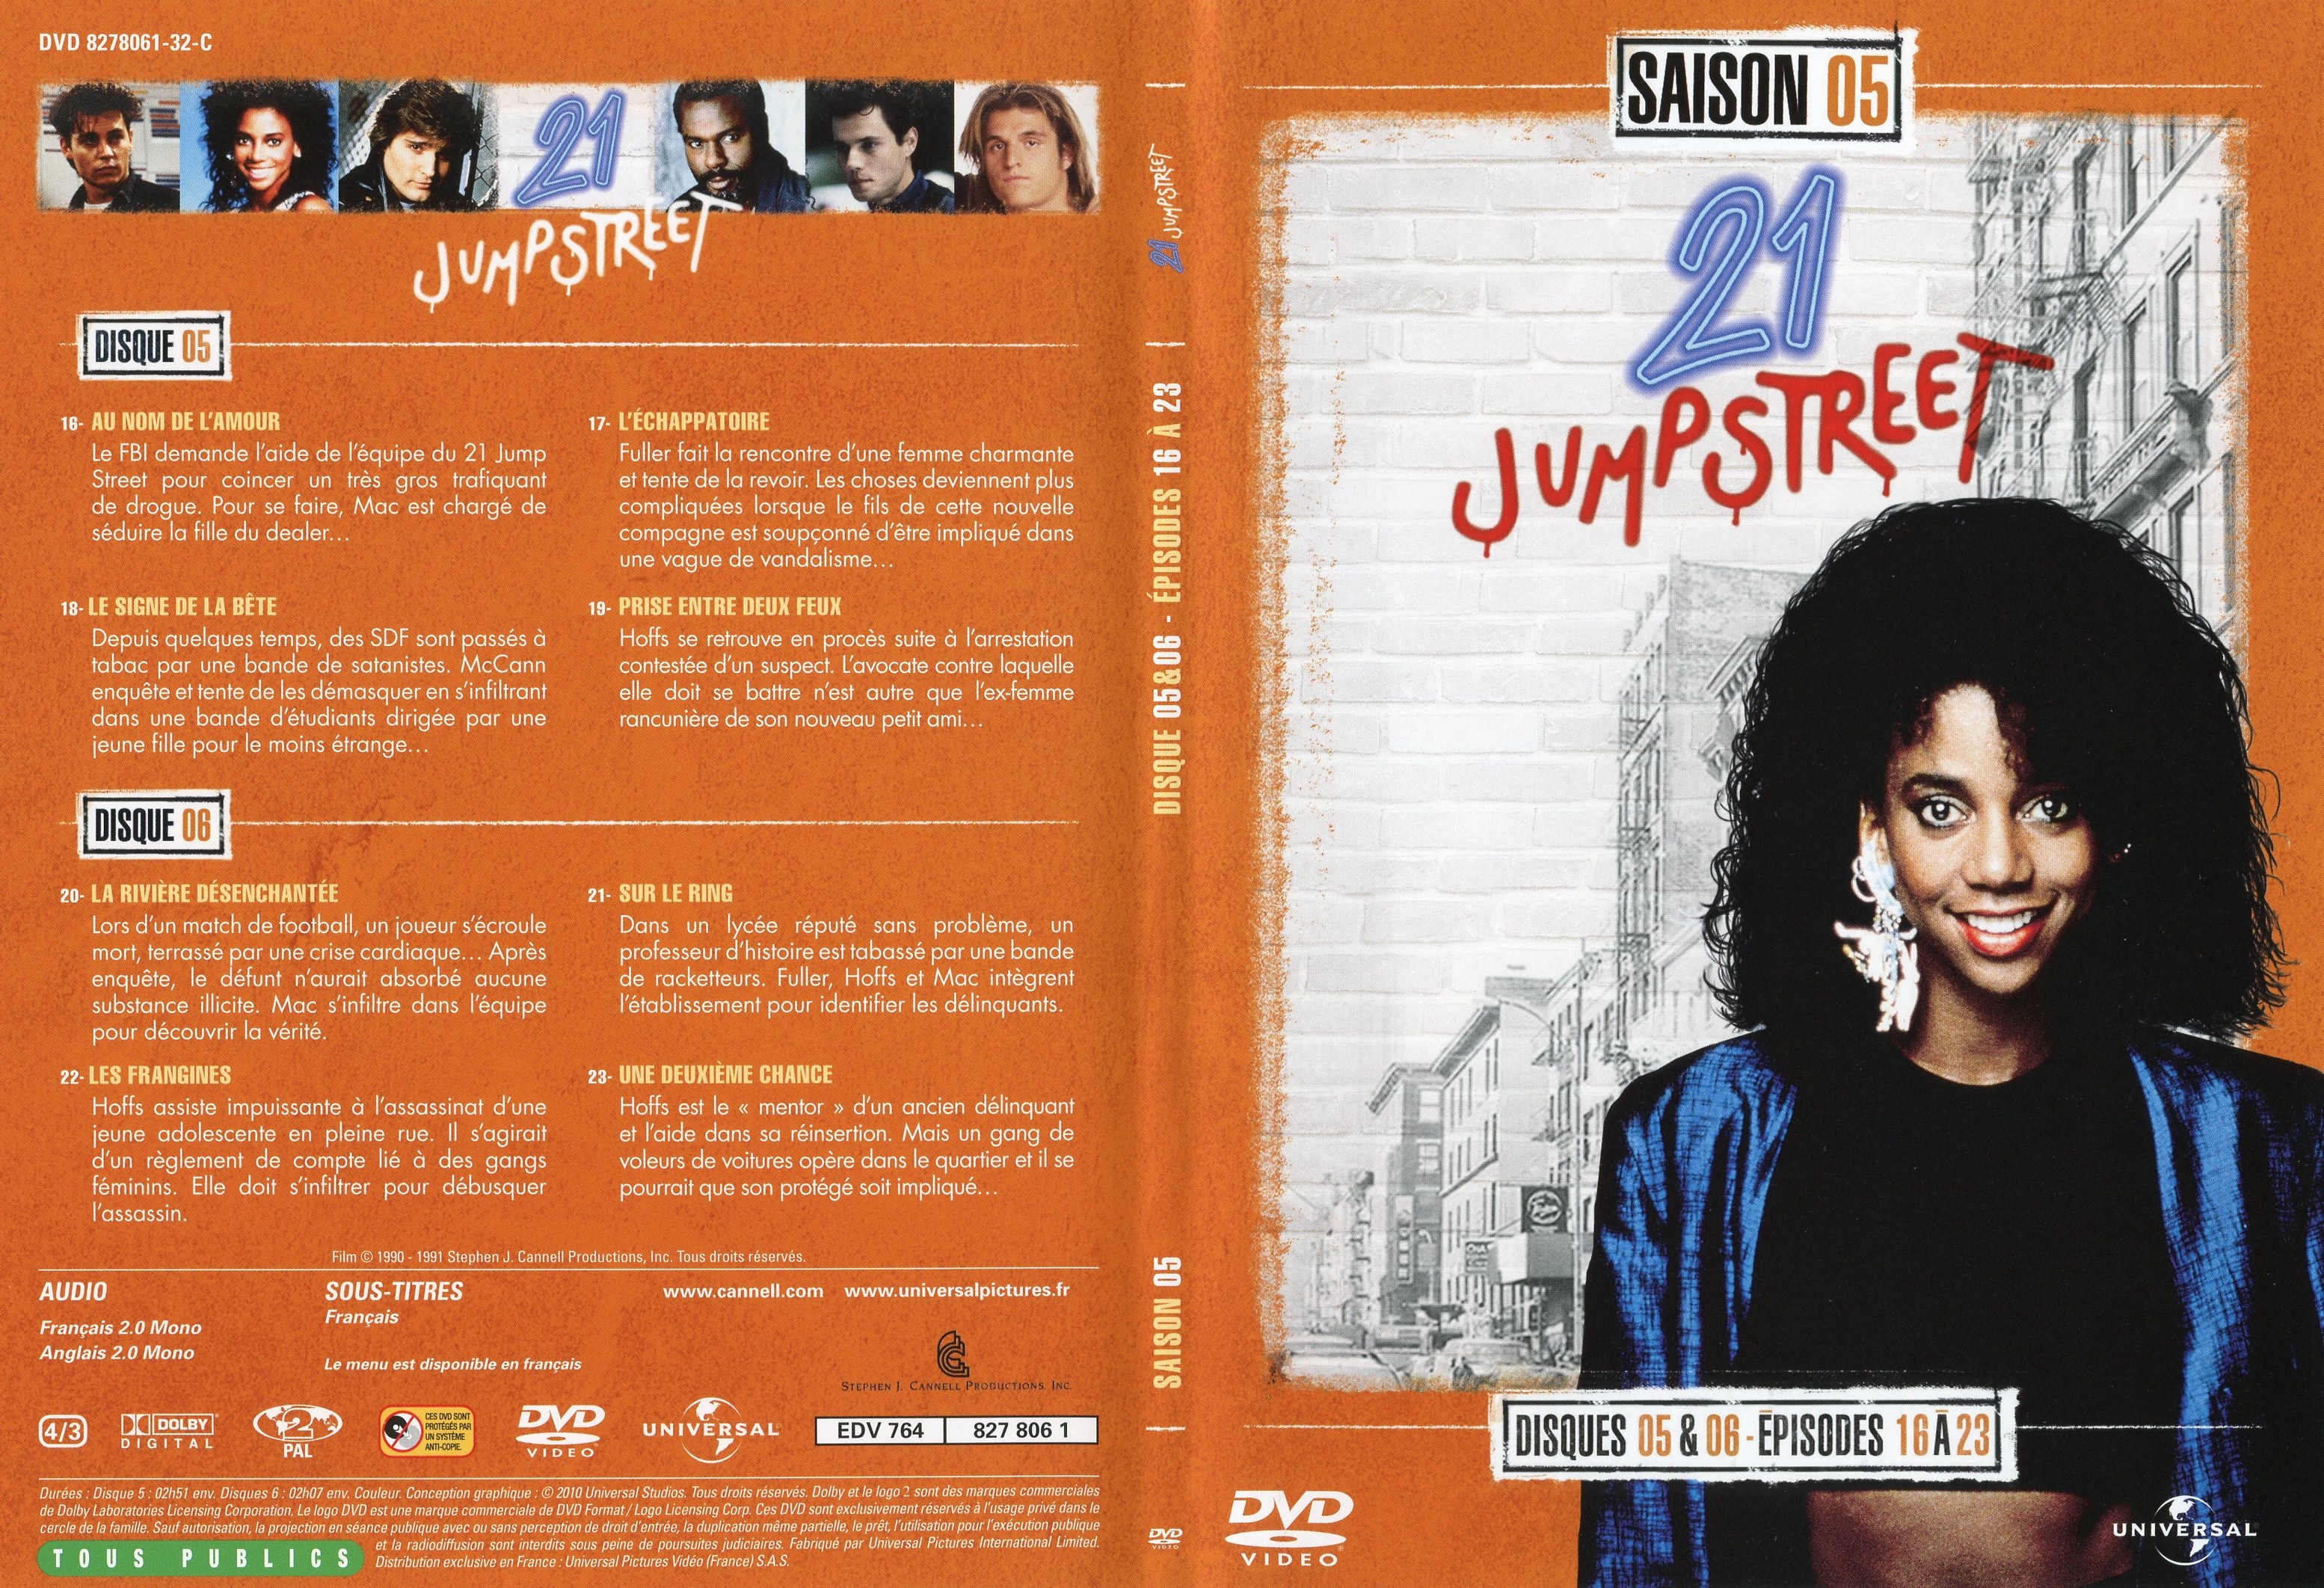 Jaquette DVD 21 jump street Saison 5 DVD 3